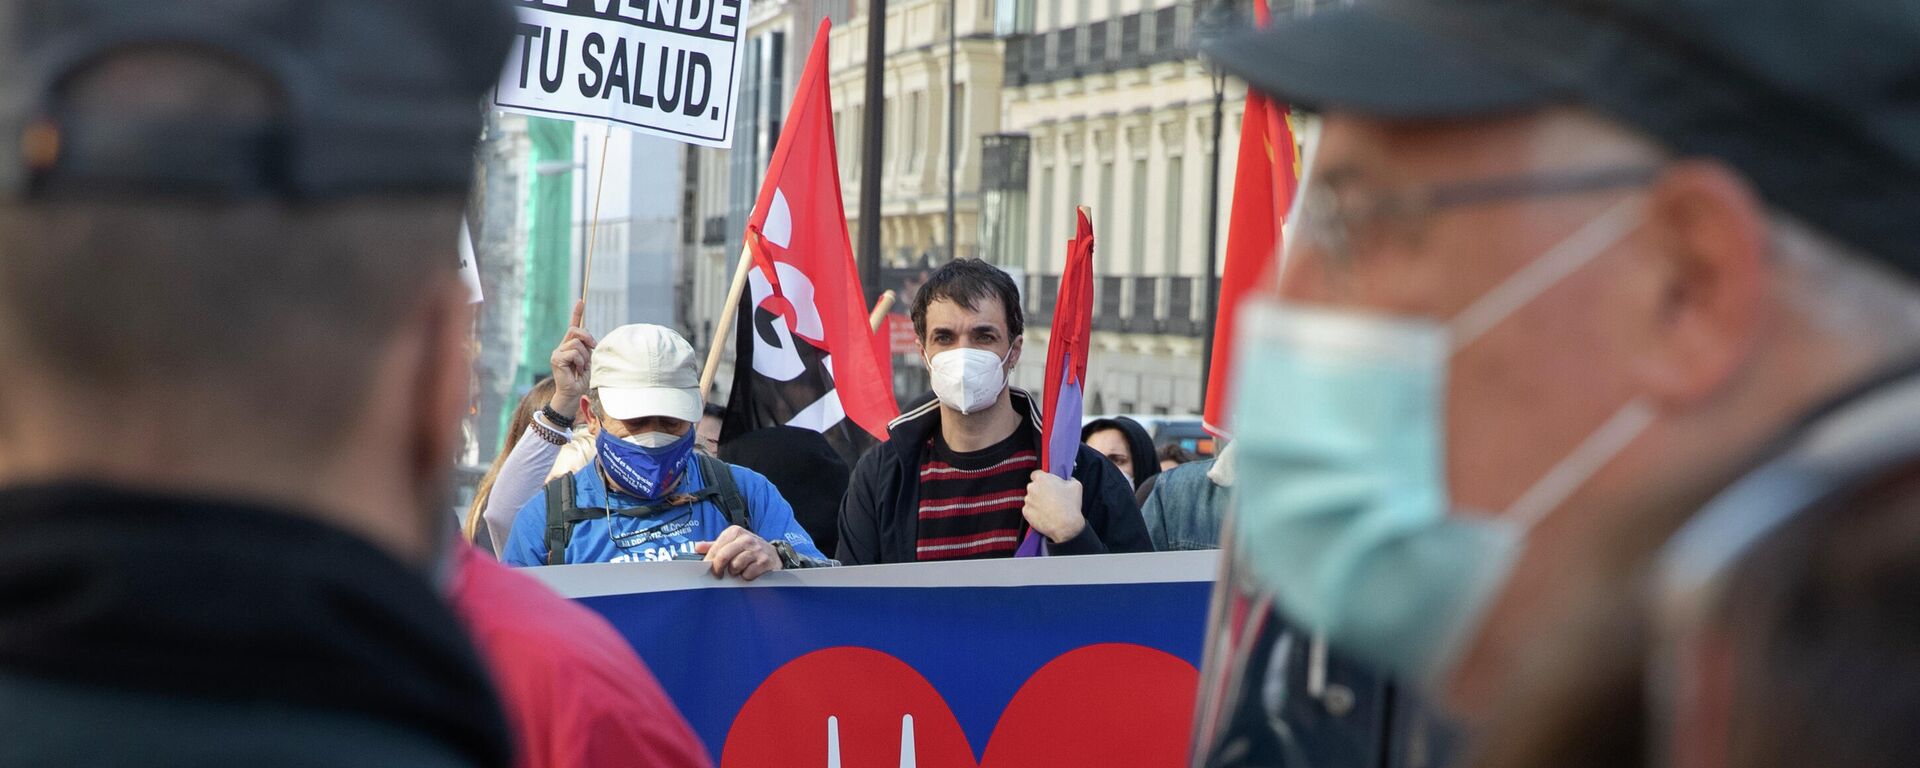 Manifestación a favor de la Sanidad pública. Madrid, 27 de febrero de 2021 - Sputnik Mundo, 1920, 15.03.2021